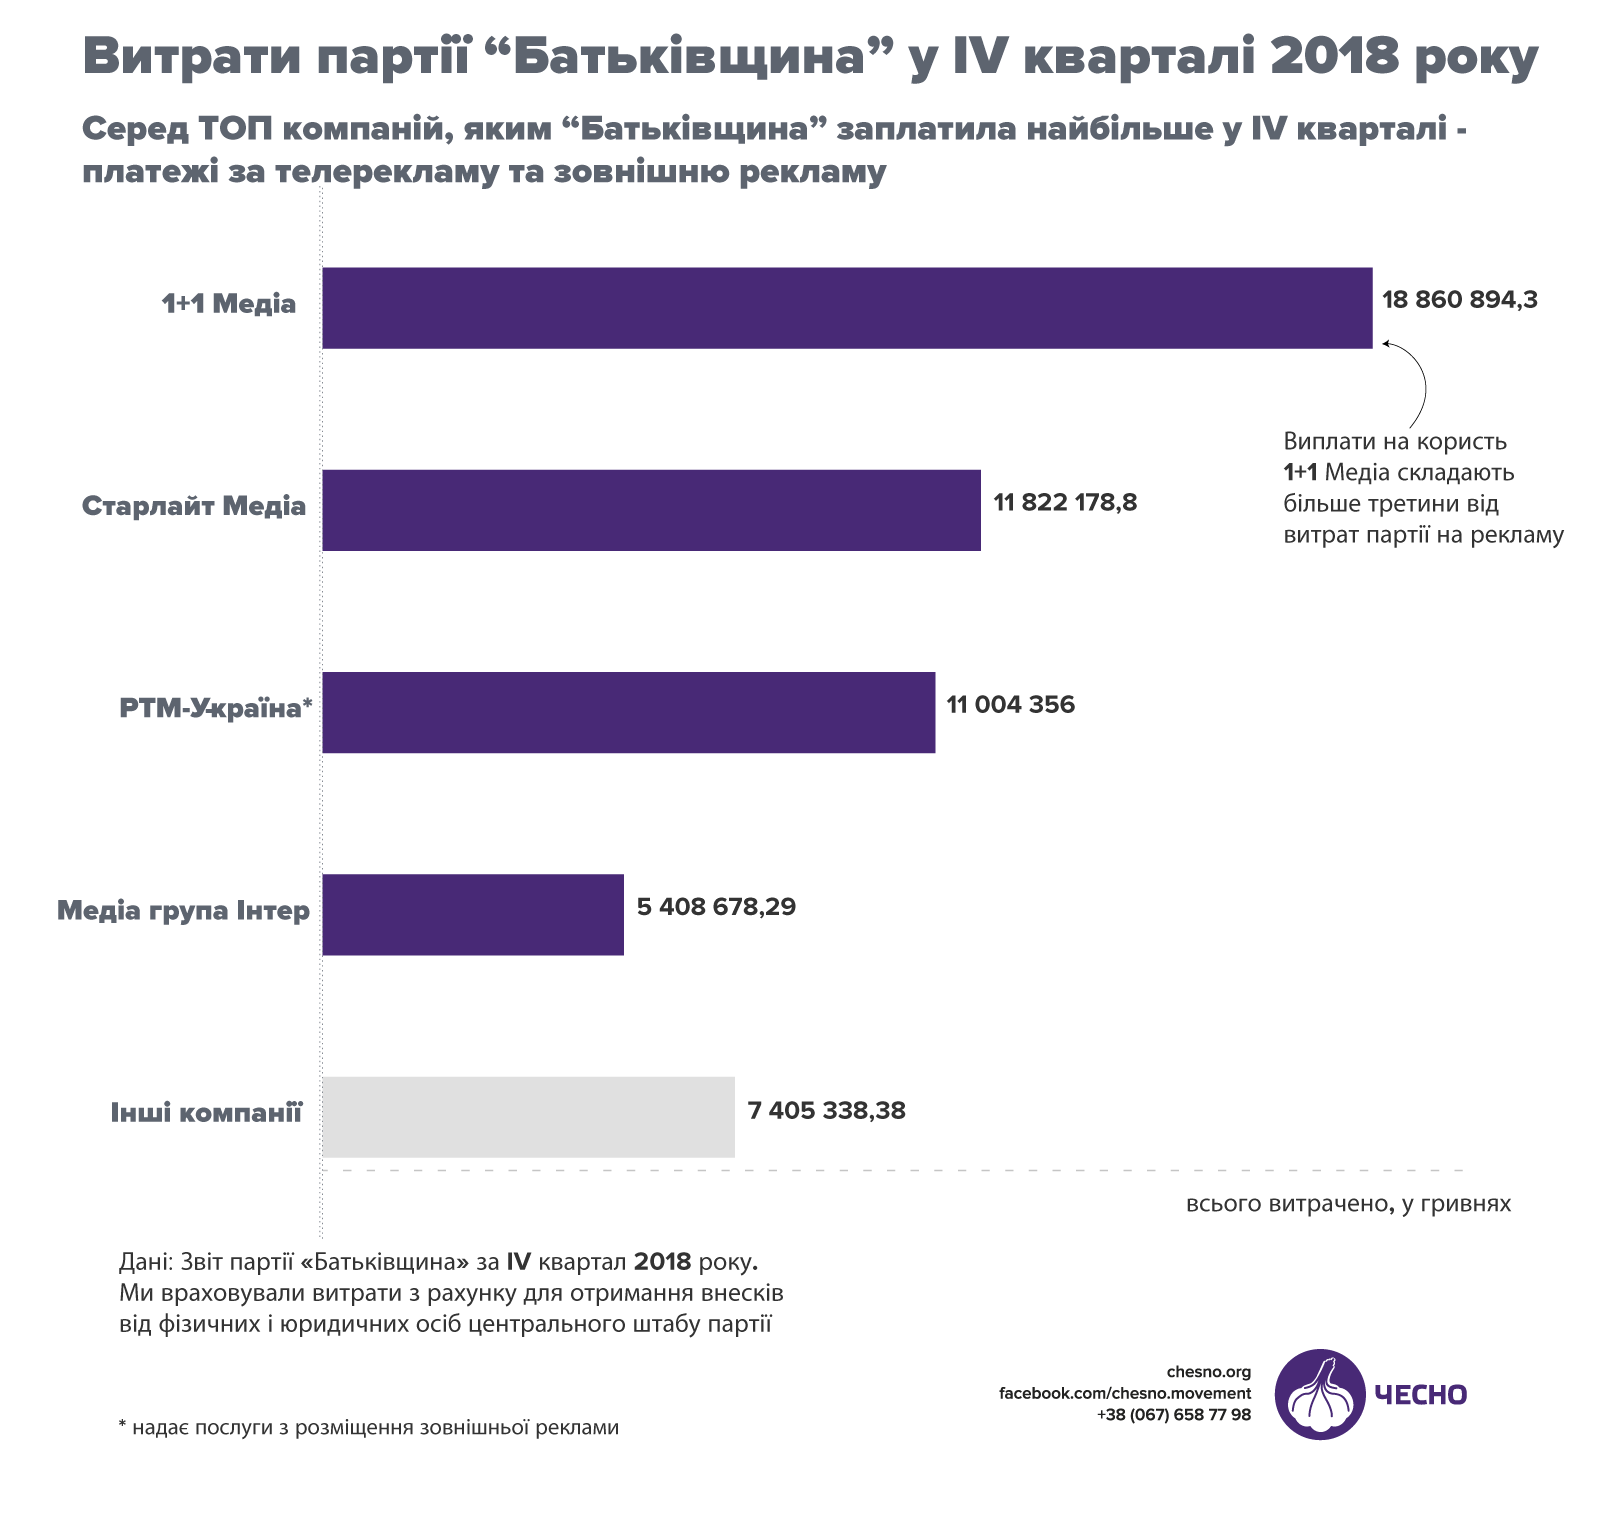 Інфографіка з витратами «Батьківщини» на рекламу Тимошенко, натисніть для перегляду в повному розмірі